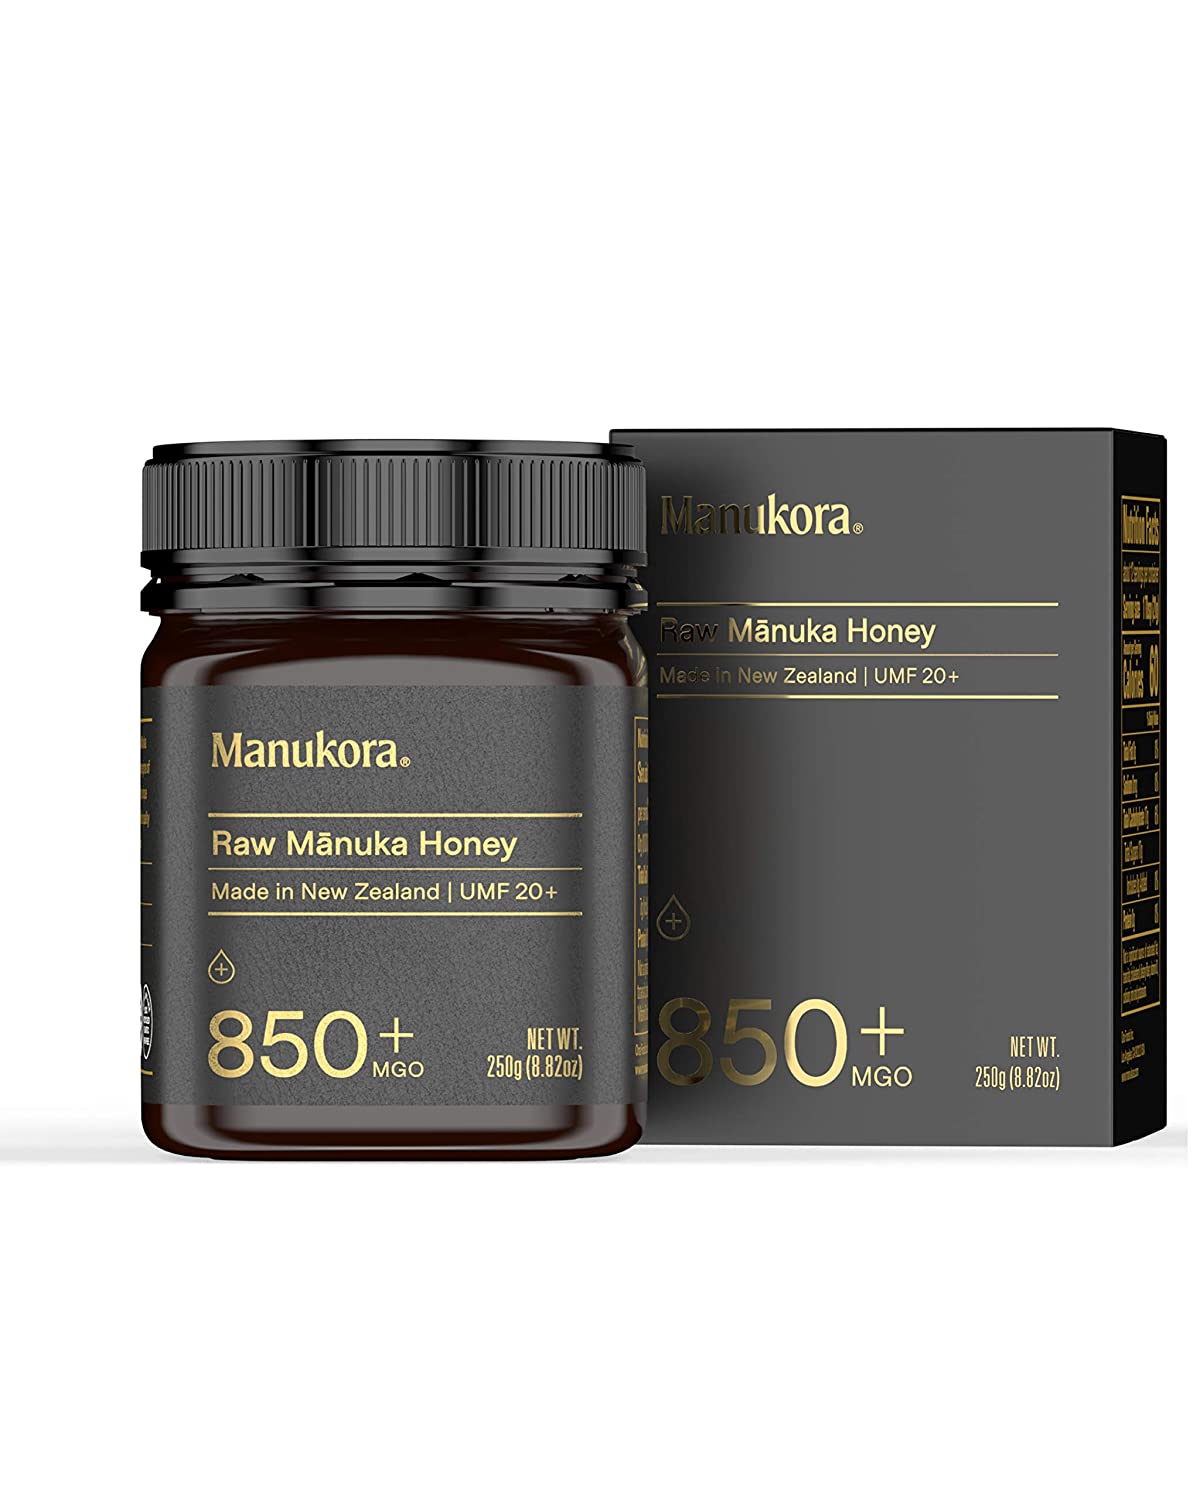 Manukora UMF 20+/MGO 850+ Raw Manuka Honey - 250g/8.8oz-1